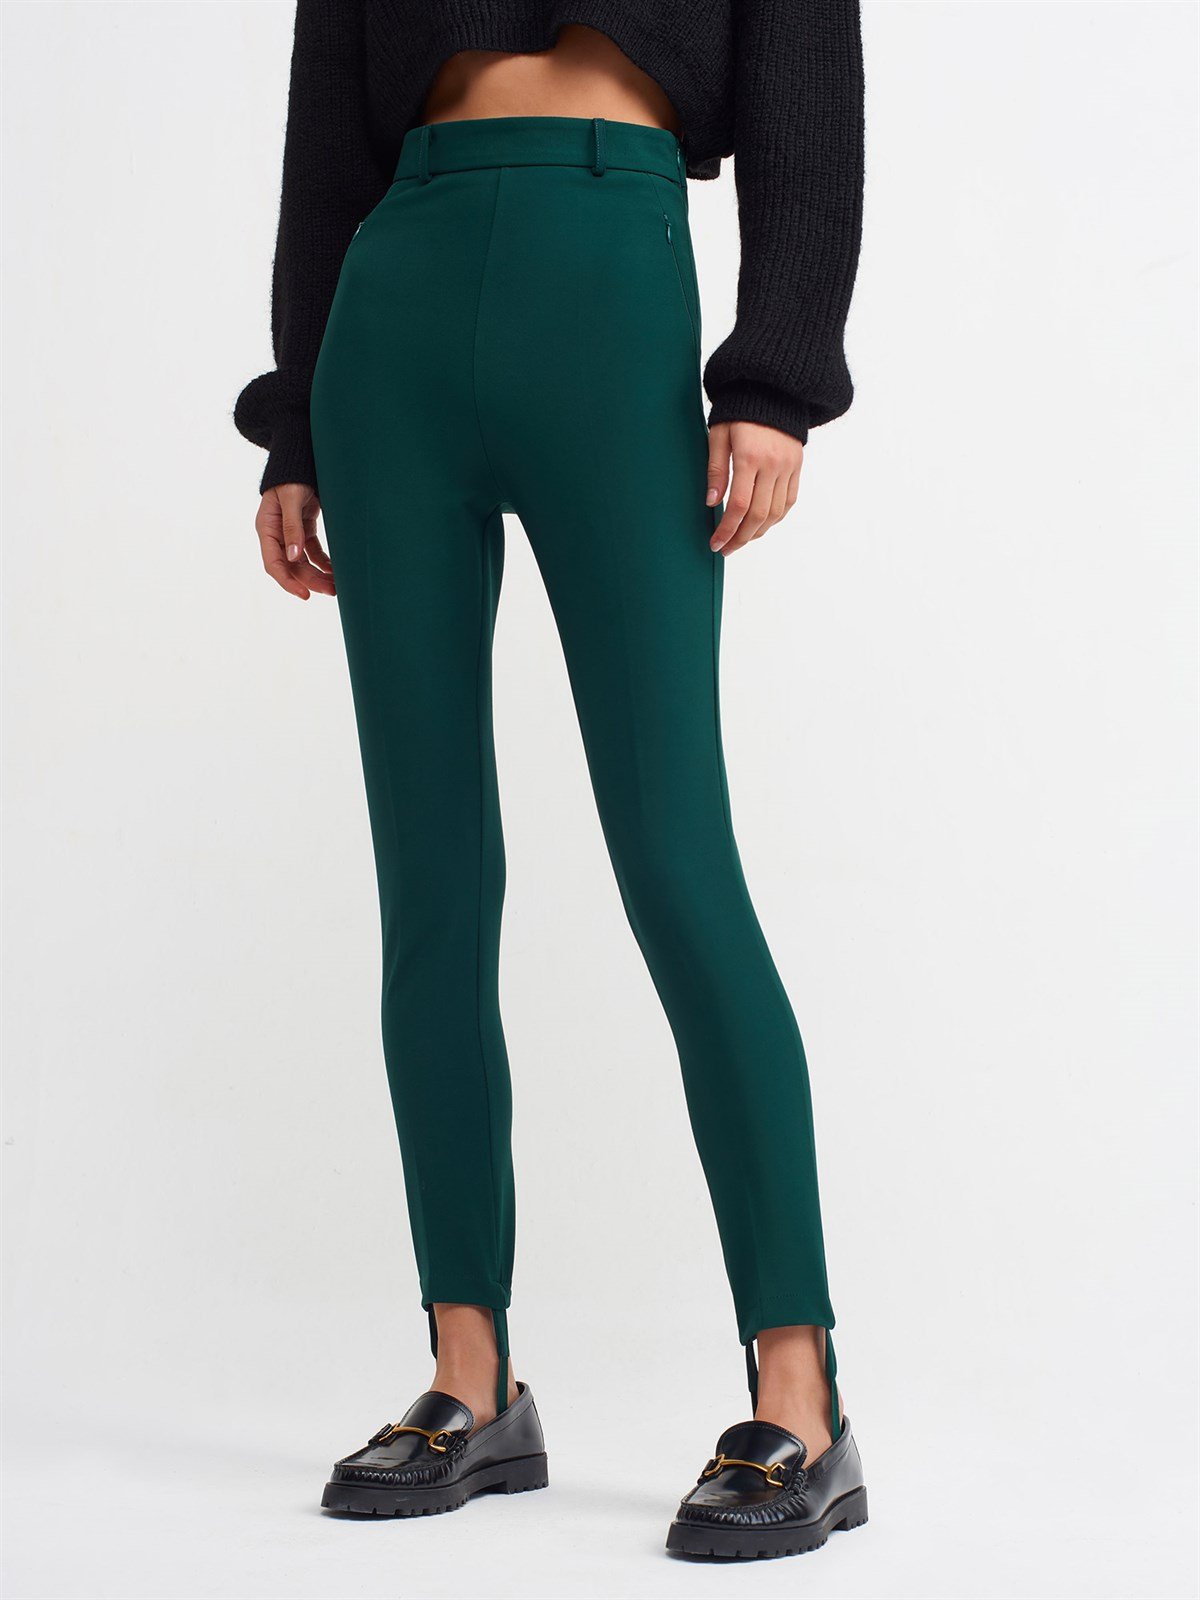 Kadın Yeşil Yüksek Bel Pantolon 70311